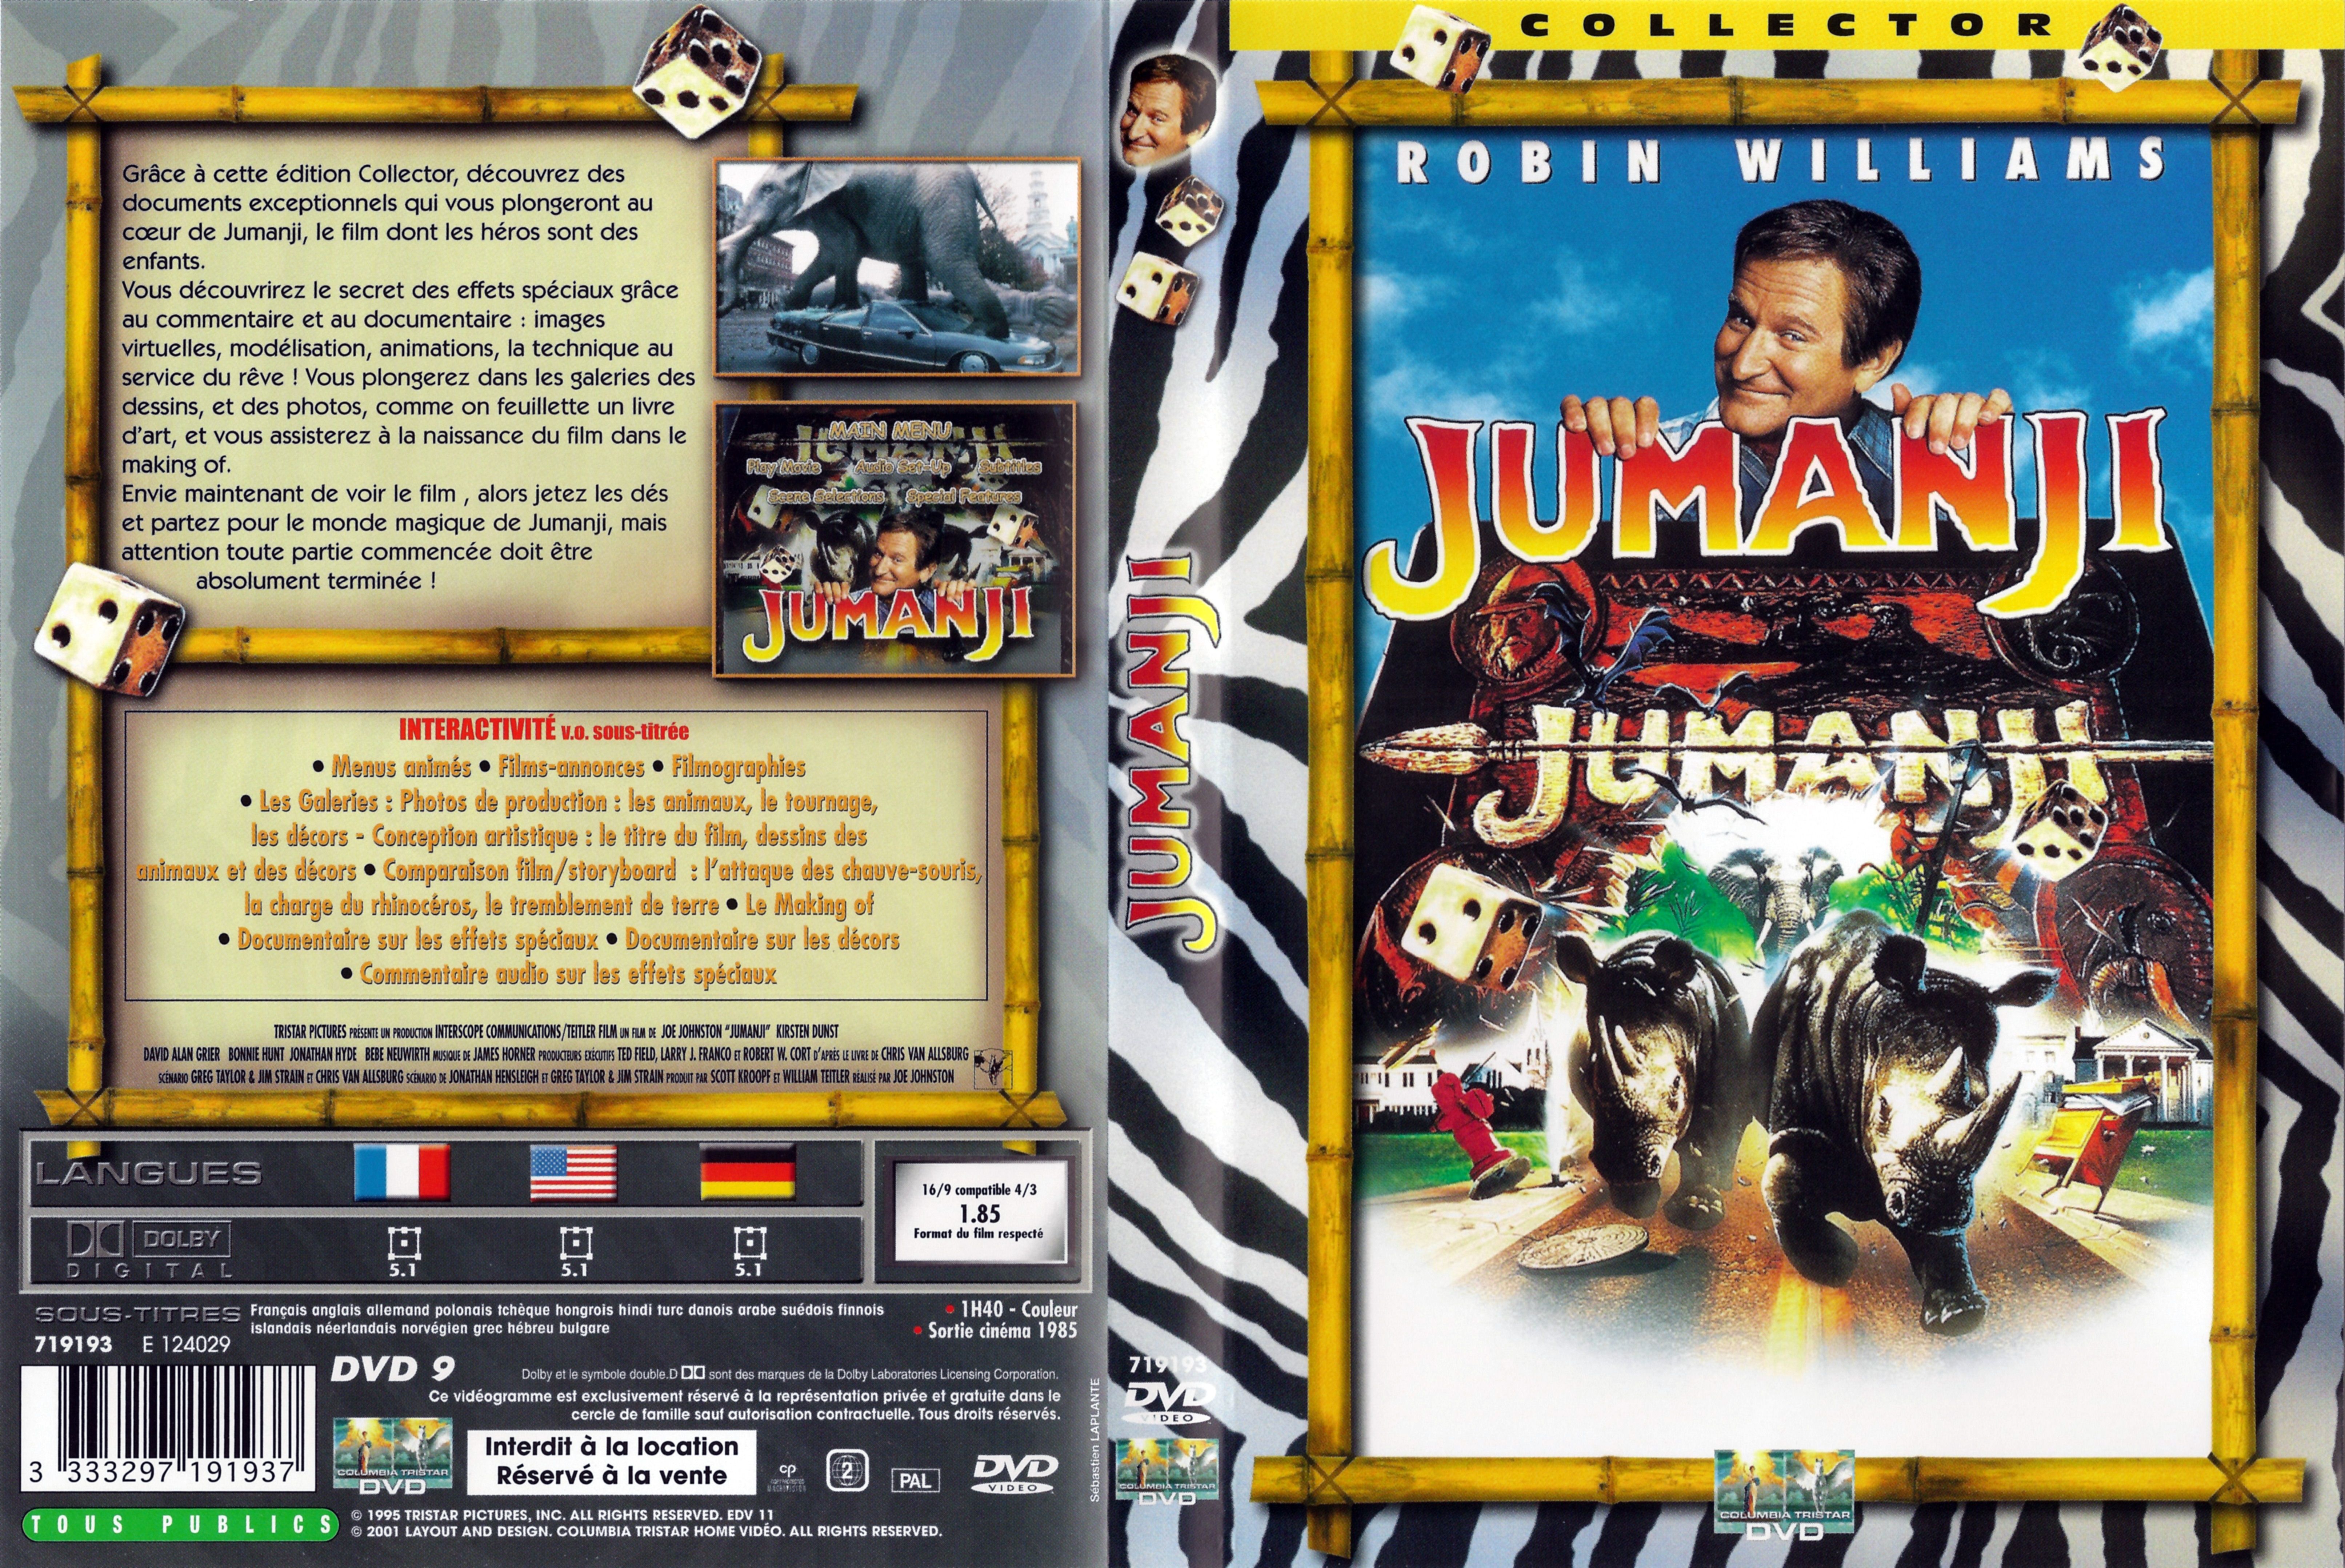 Jaquette DVD Jumanji v3